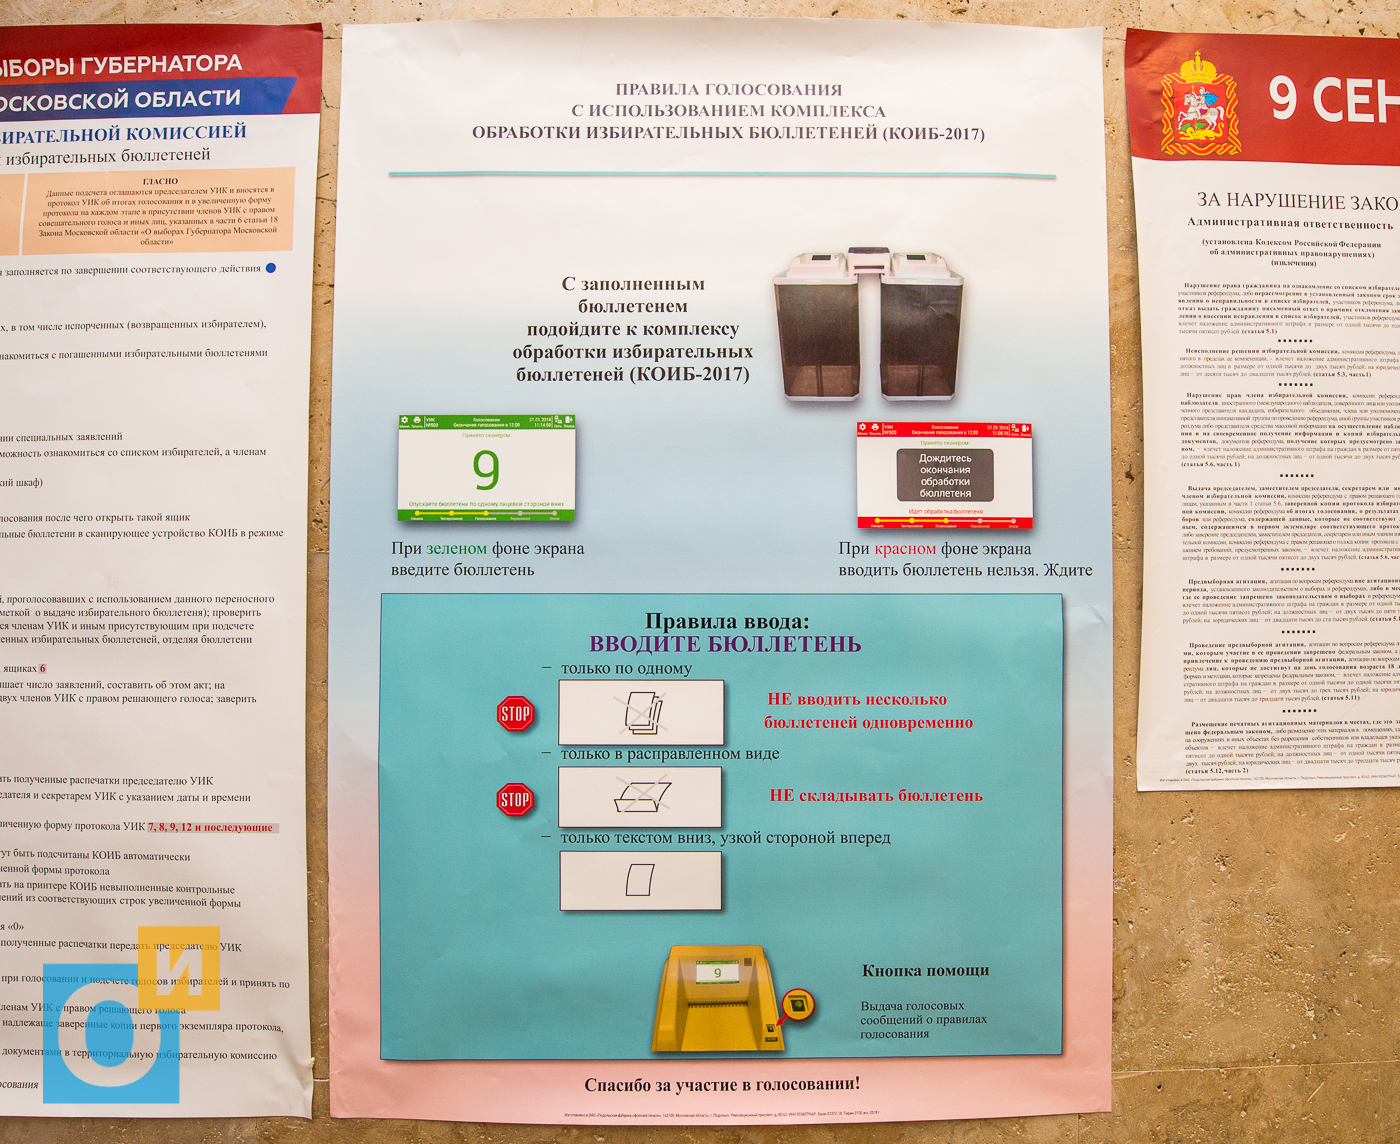 Во сколько открывается избирательный участок в москве. Правила голосования с использованием КОИБ. Комплекс обработки избирательных бюллетеней. Комплекс обработки избирательных бюллетеней 2017. Правило голосования с использованием КОИБ 2017.